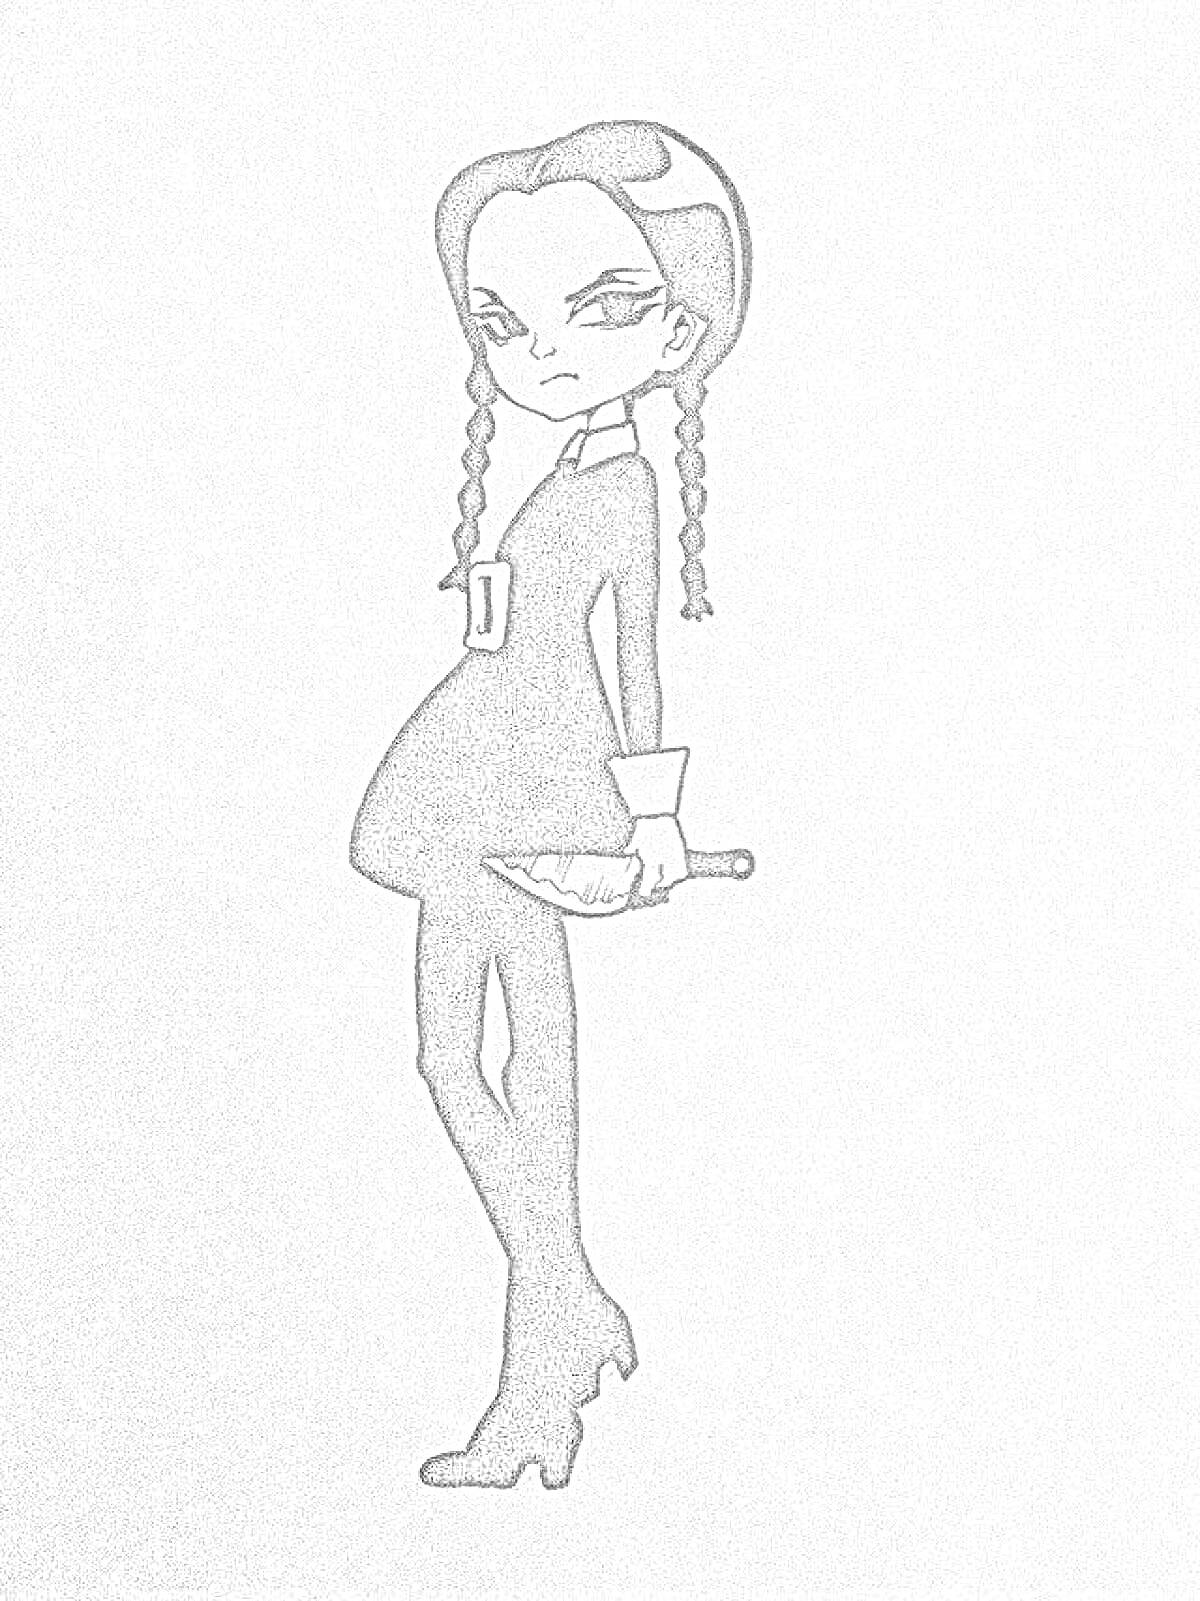 Девочка в черном платье со светлыми воротником и манжетами, с двумя косами. Она держит нож.